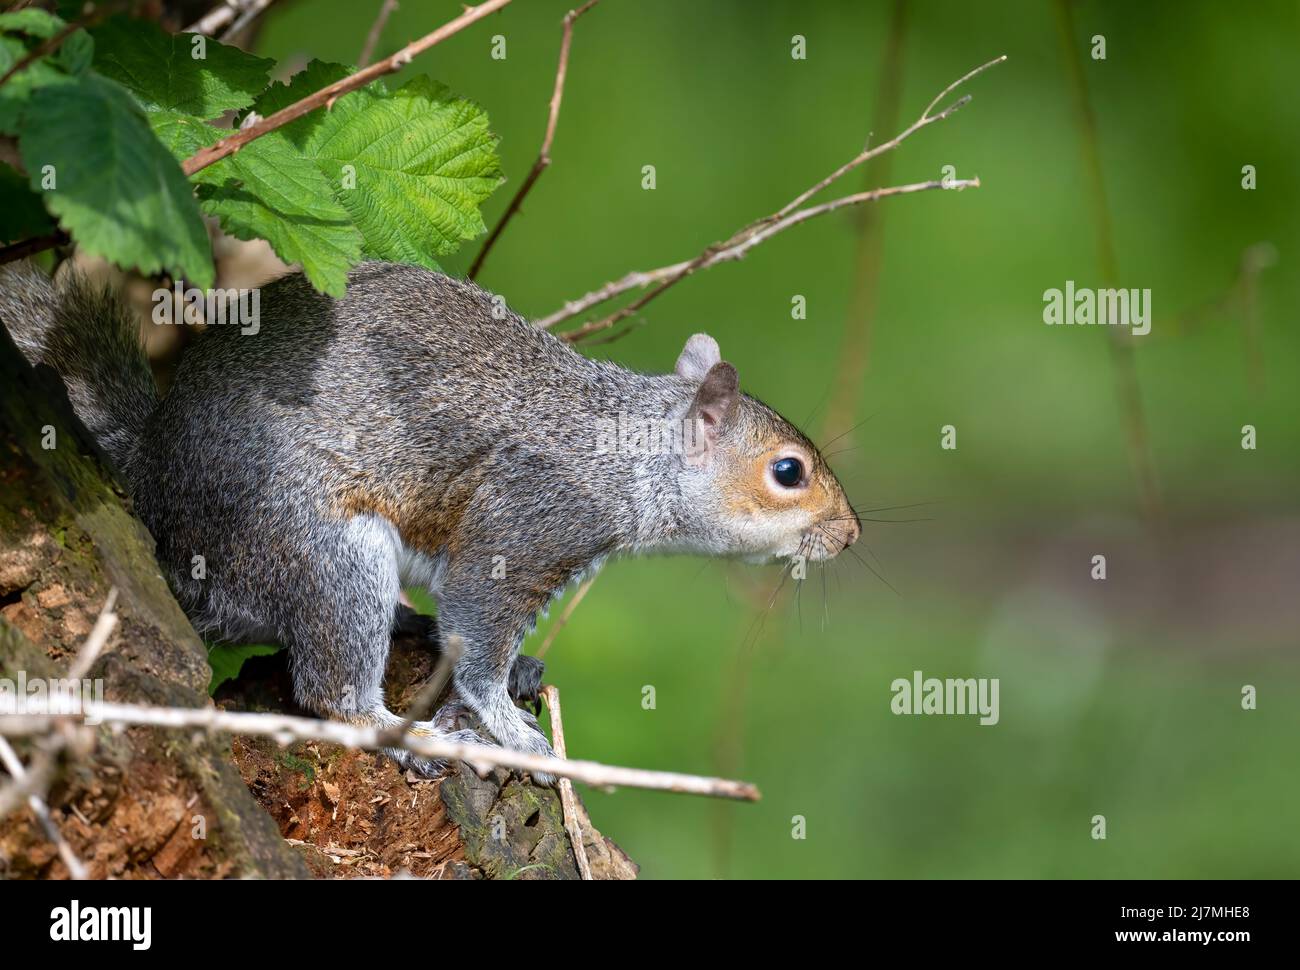 Süßes, graues Eichhörnchen (Sciurus carolinensis), Futtersuche im Wald. Dieser amerikanische "Import" ist ein umstrittenes Tier, das geliebt und verabscheut wird Stockfoto